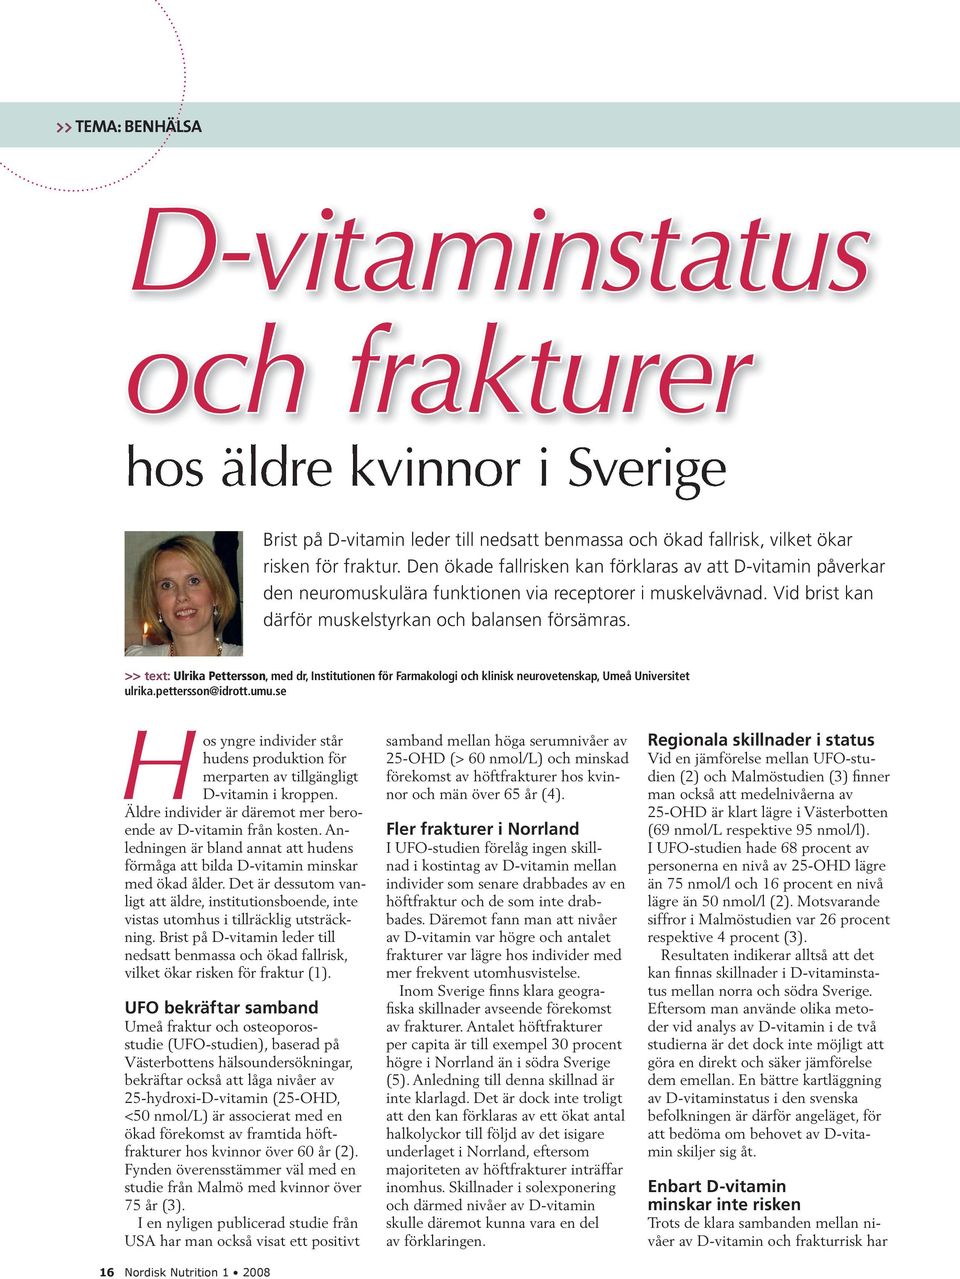 >> text: Ulrika Pettersson, med dr, Institutionen för Farmakologi och klinisk neurovetenskap, Umeå Universitet ulrika.pettersson@idrott.umu.